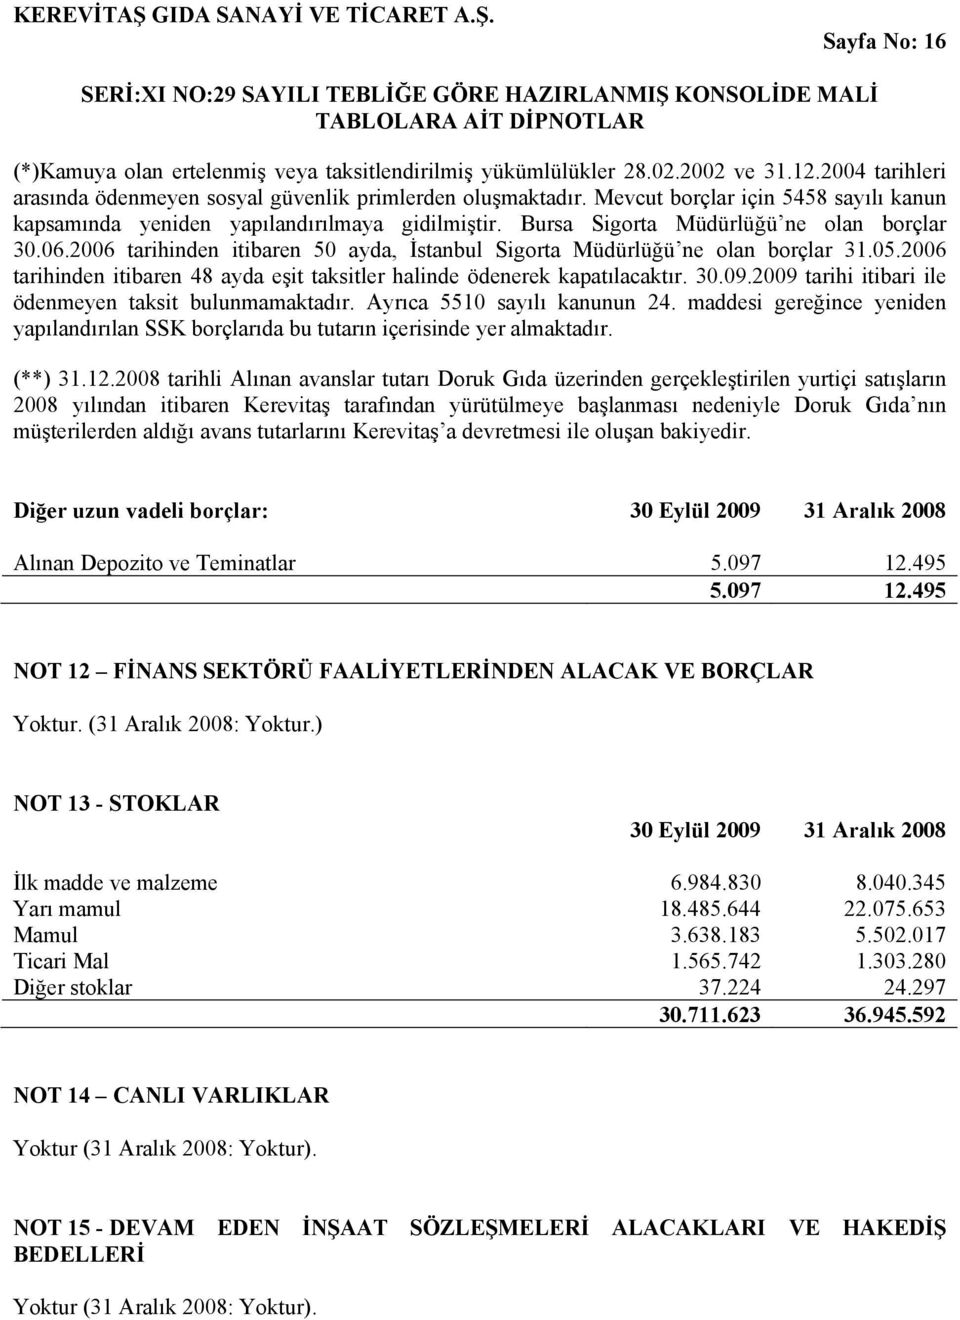 2006 tarihinden itibaren 50 ayda, İstanbul Sigorta Müdürlüğü ne olan borçlar 31.05.2006 tarihinden itibaren 48 ayda eşit taksitler halinde ödenerek kapatılacaktır. 30.09.